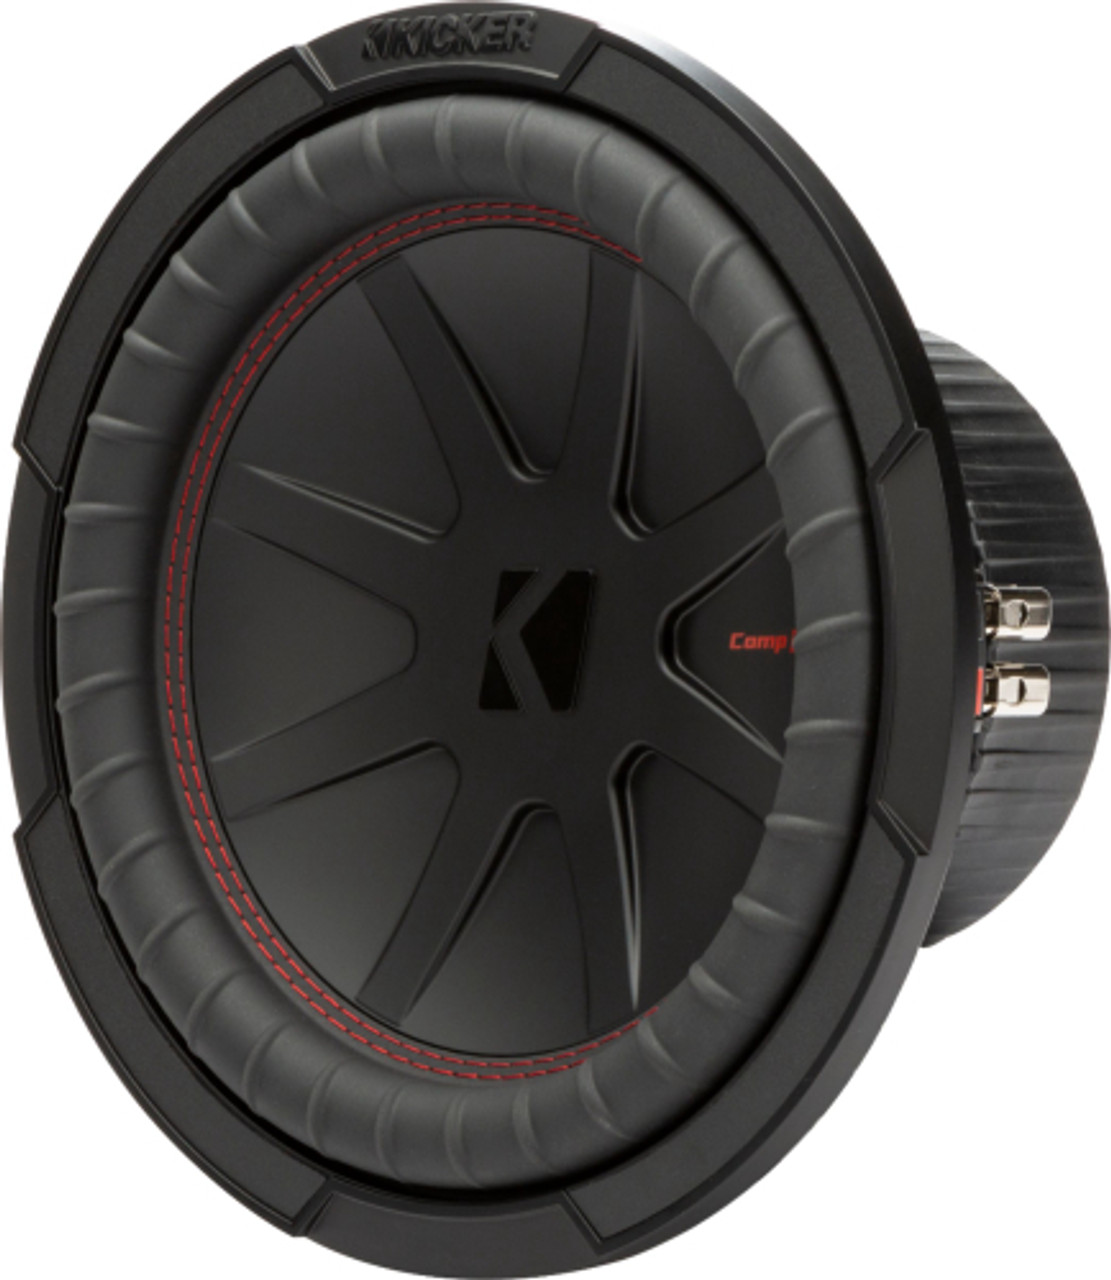 KICKER - CompR 10" Dual-Voice-Coil 2-Ohm Subwoofer - Black